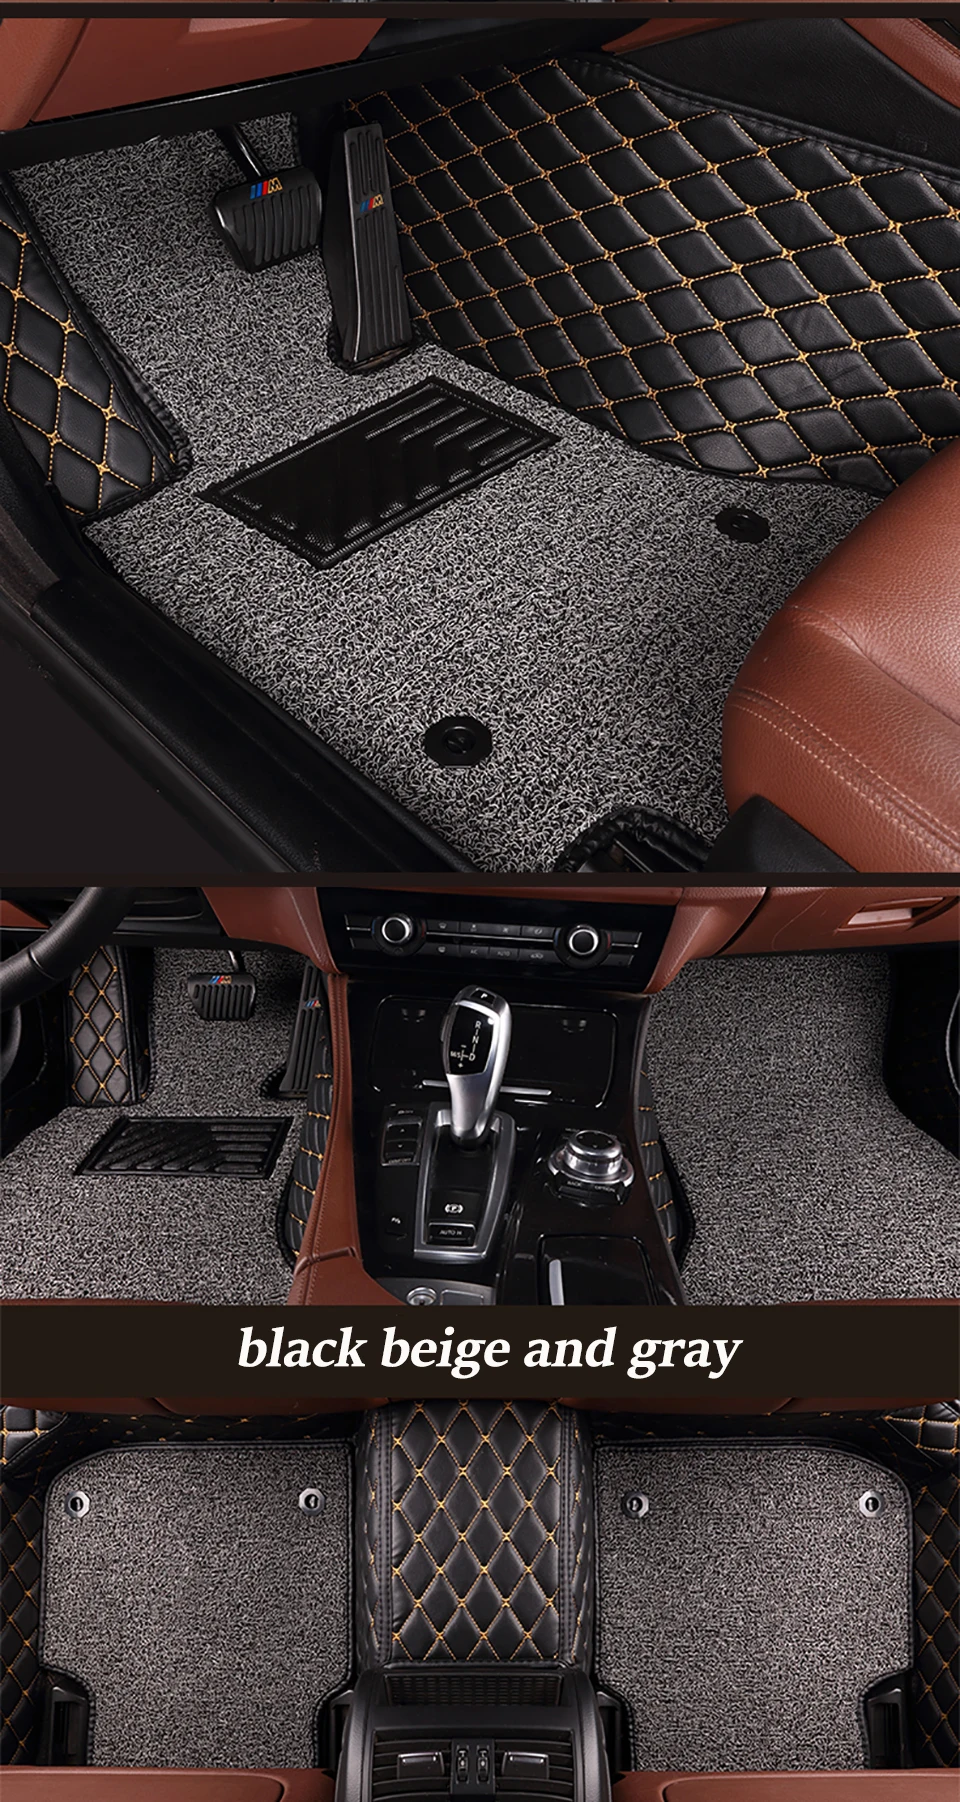 HeXinYan пользовательские автомобильные коврики для Borgward BX7 BX5 авто аксессуары Тюнинг автомобилей